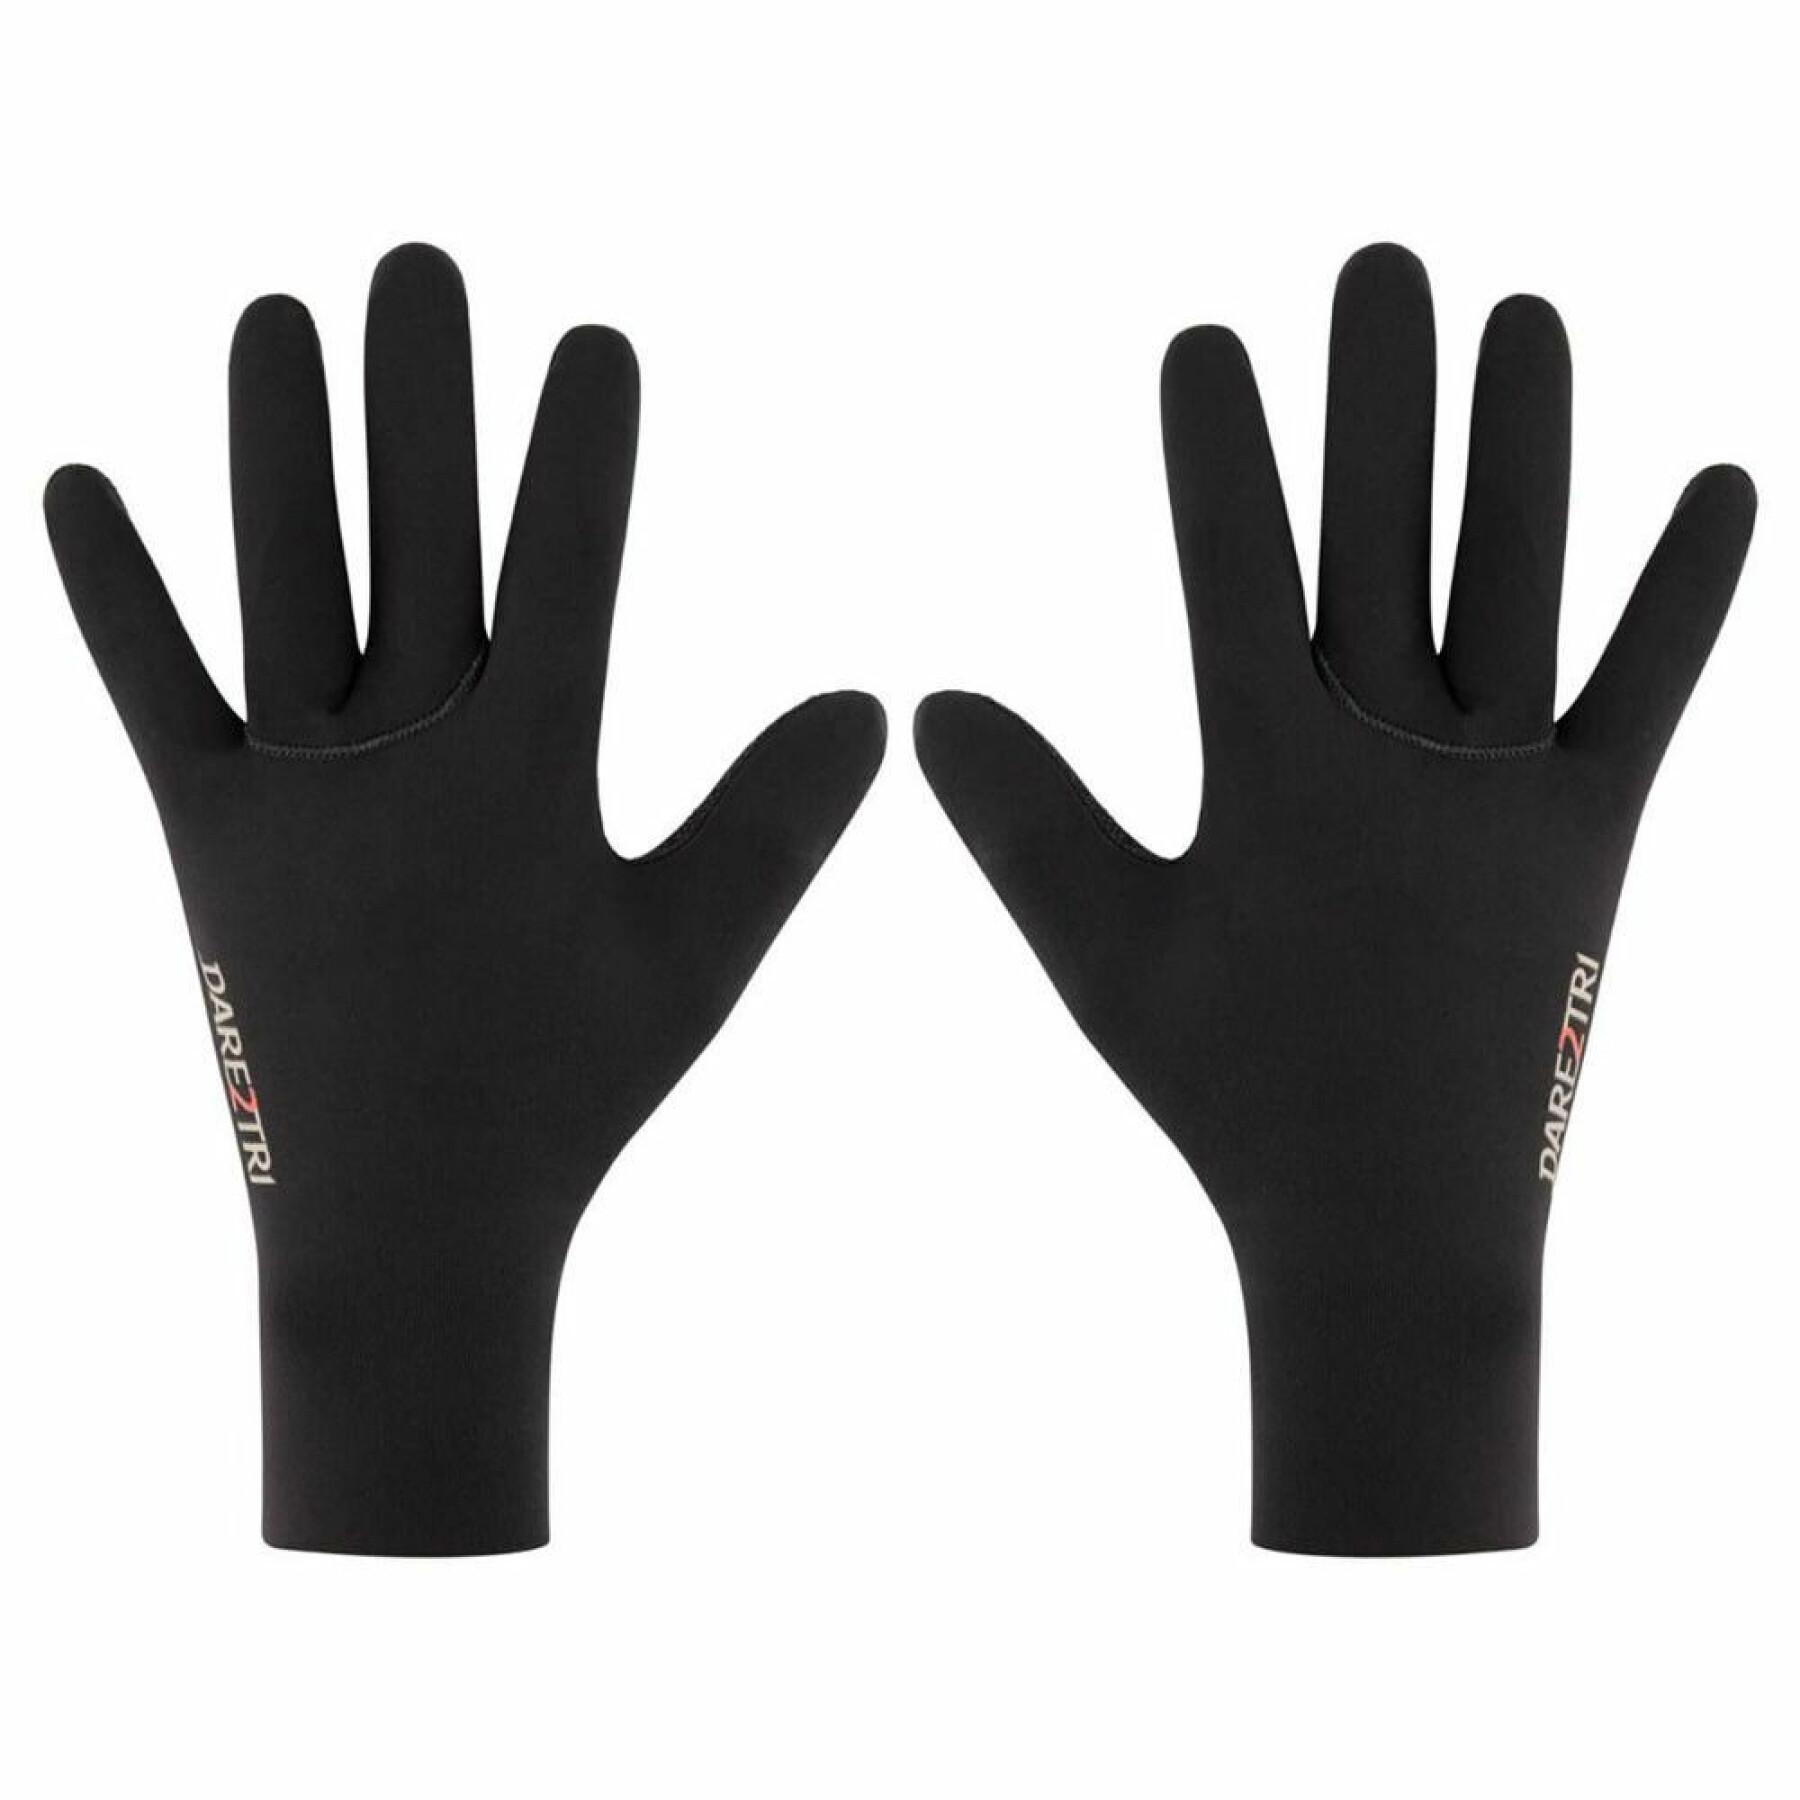 Handschuhe aus Neopren Dare2tri